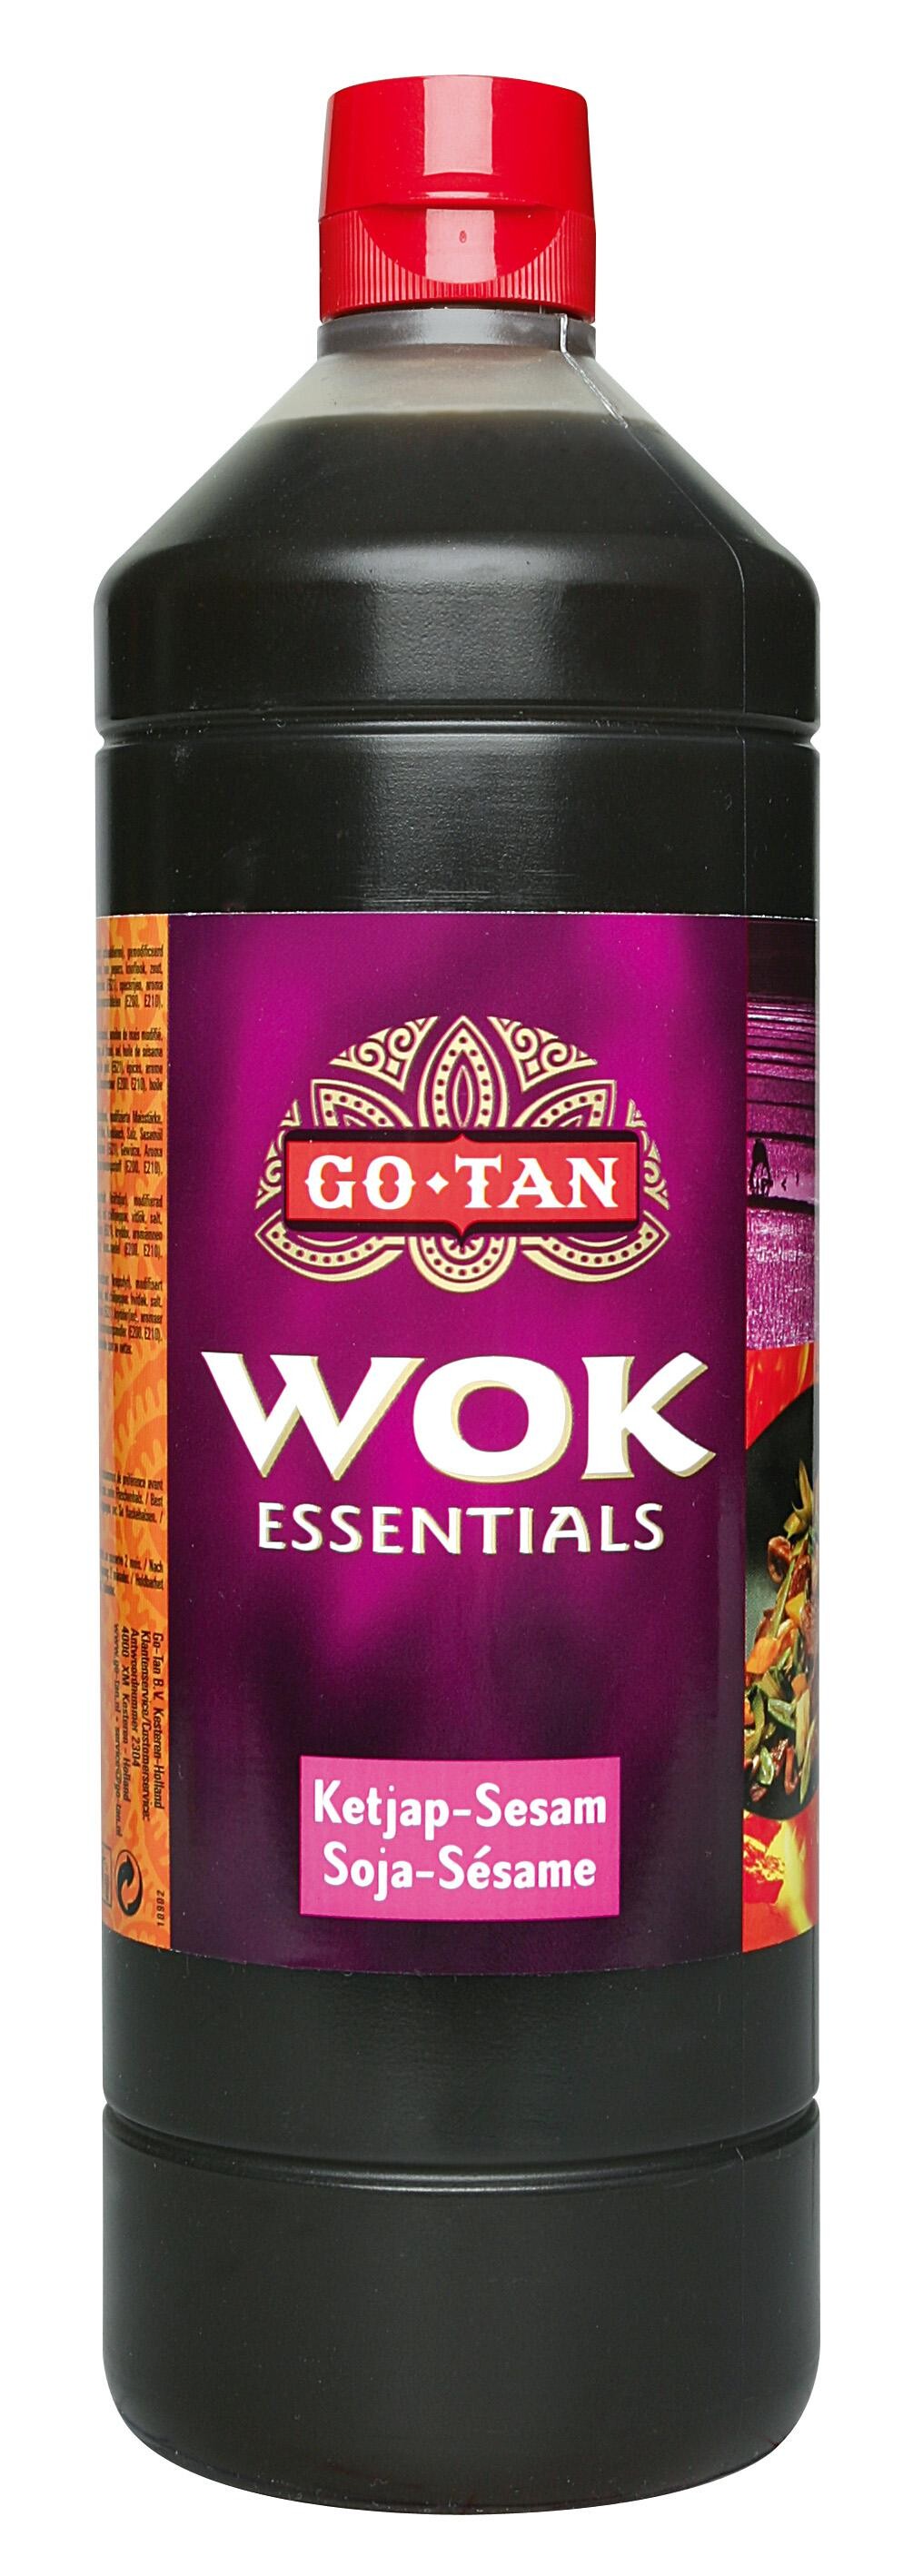 Wok essentials sauce soja sesame 1L Go Tan